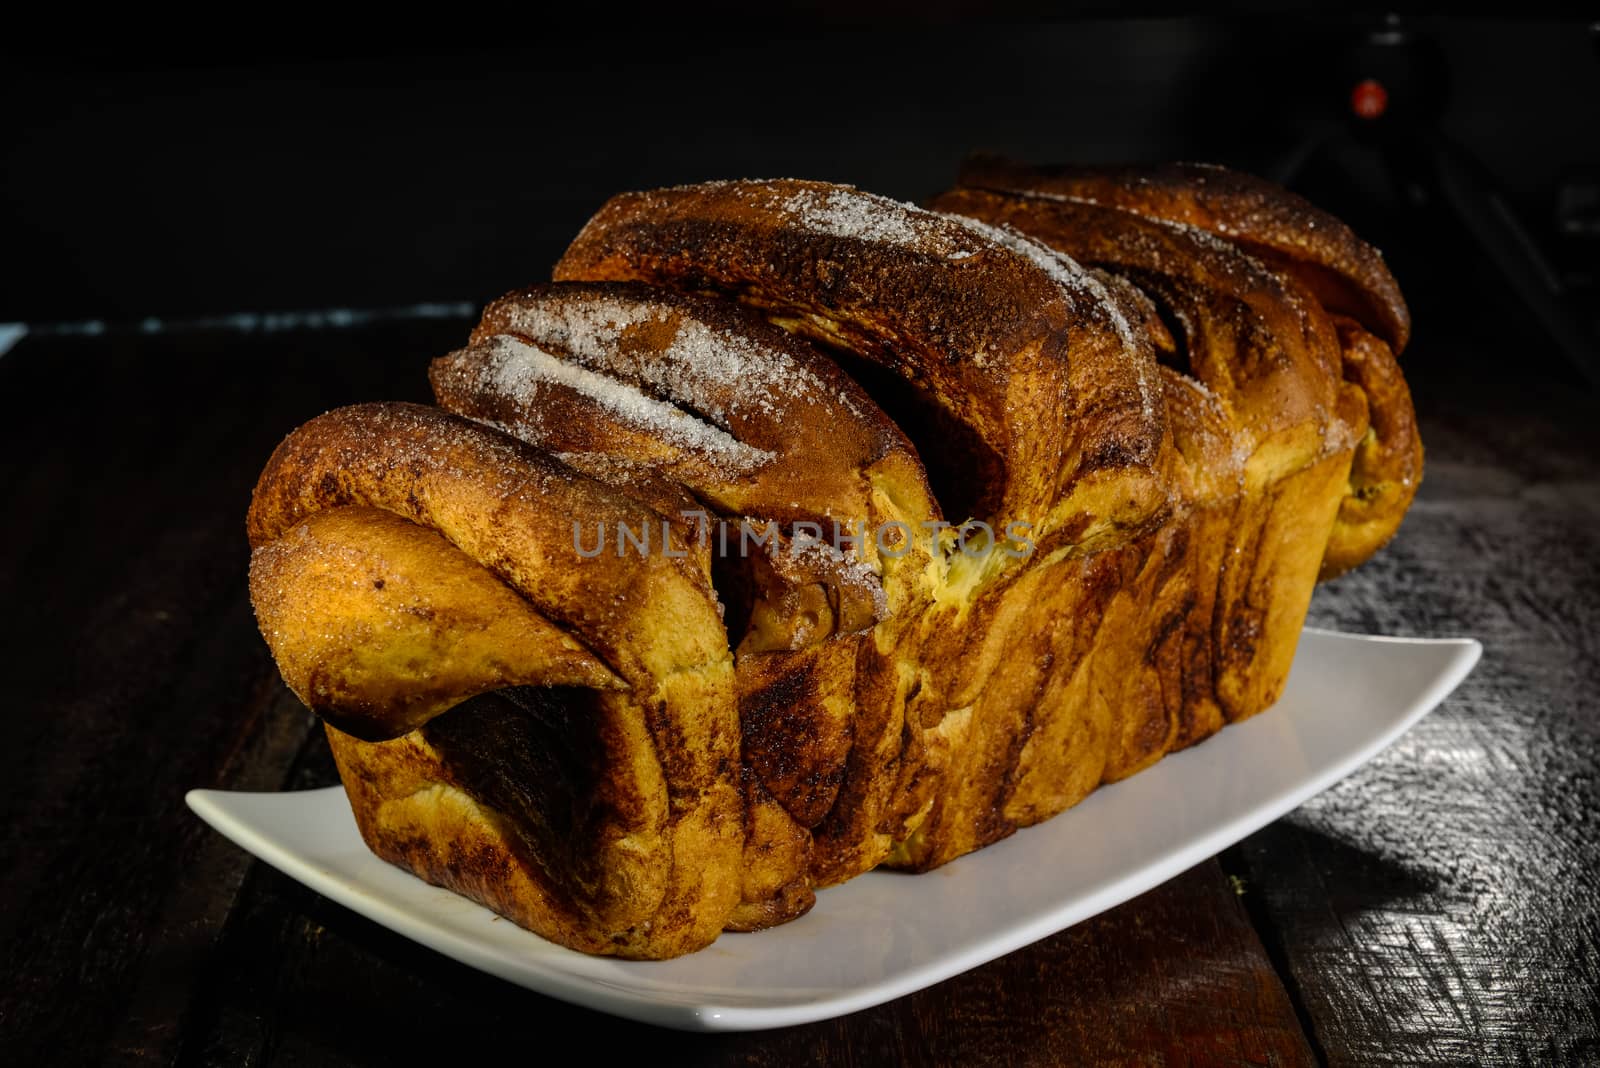 German yeast cake called Zupfkuchen made with yeast dough cinnamon and sugar